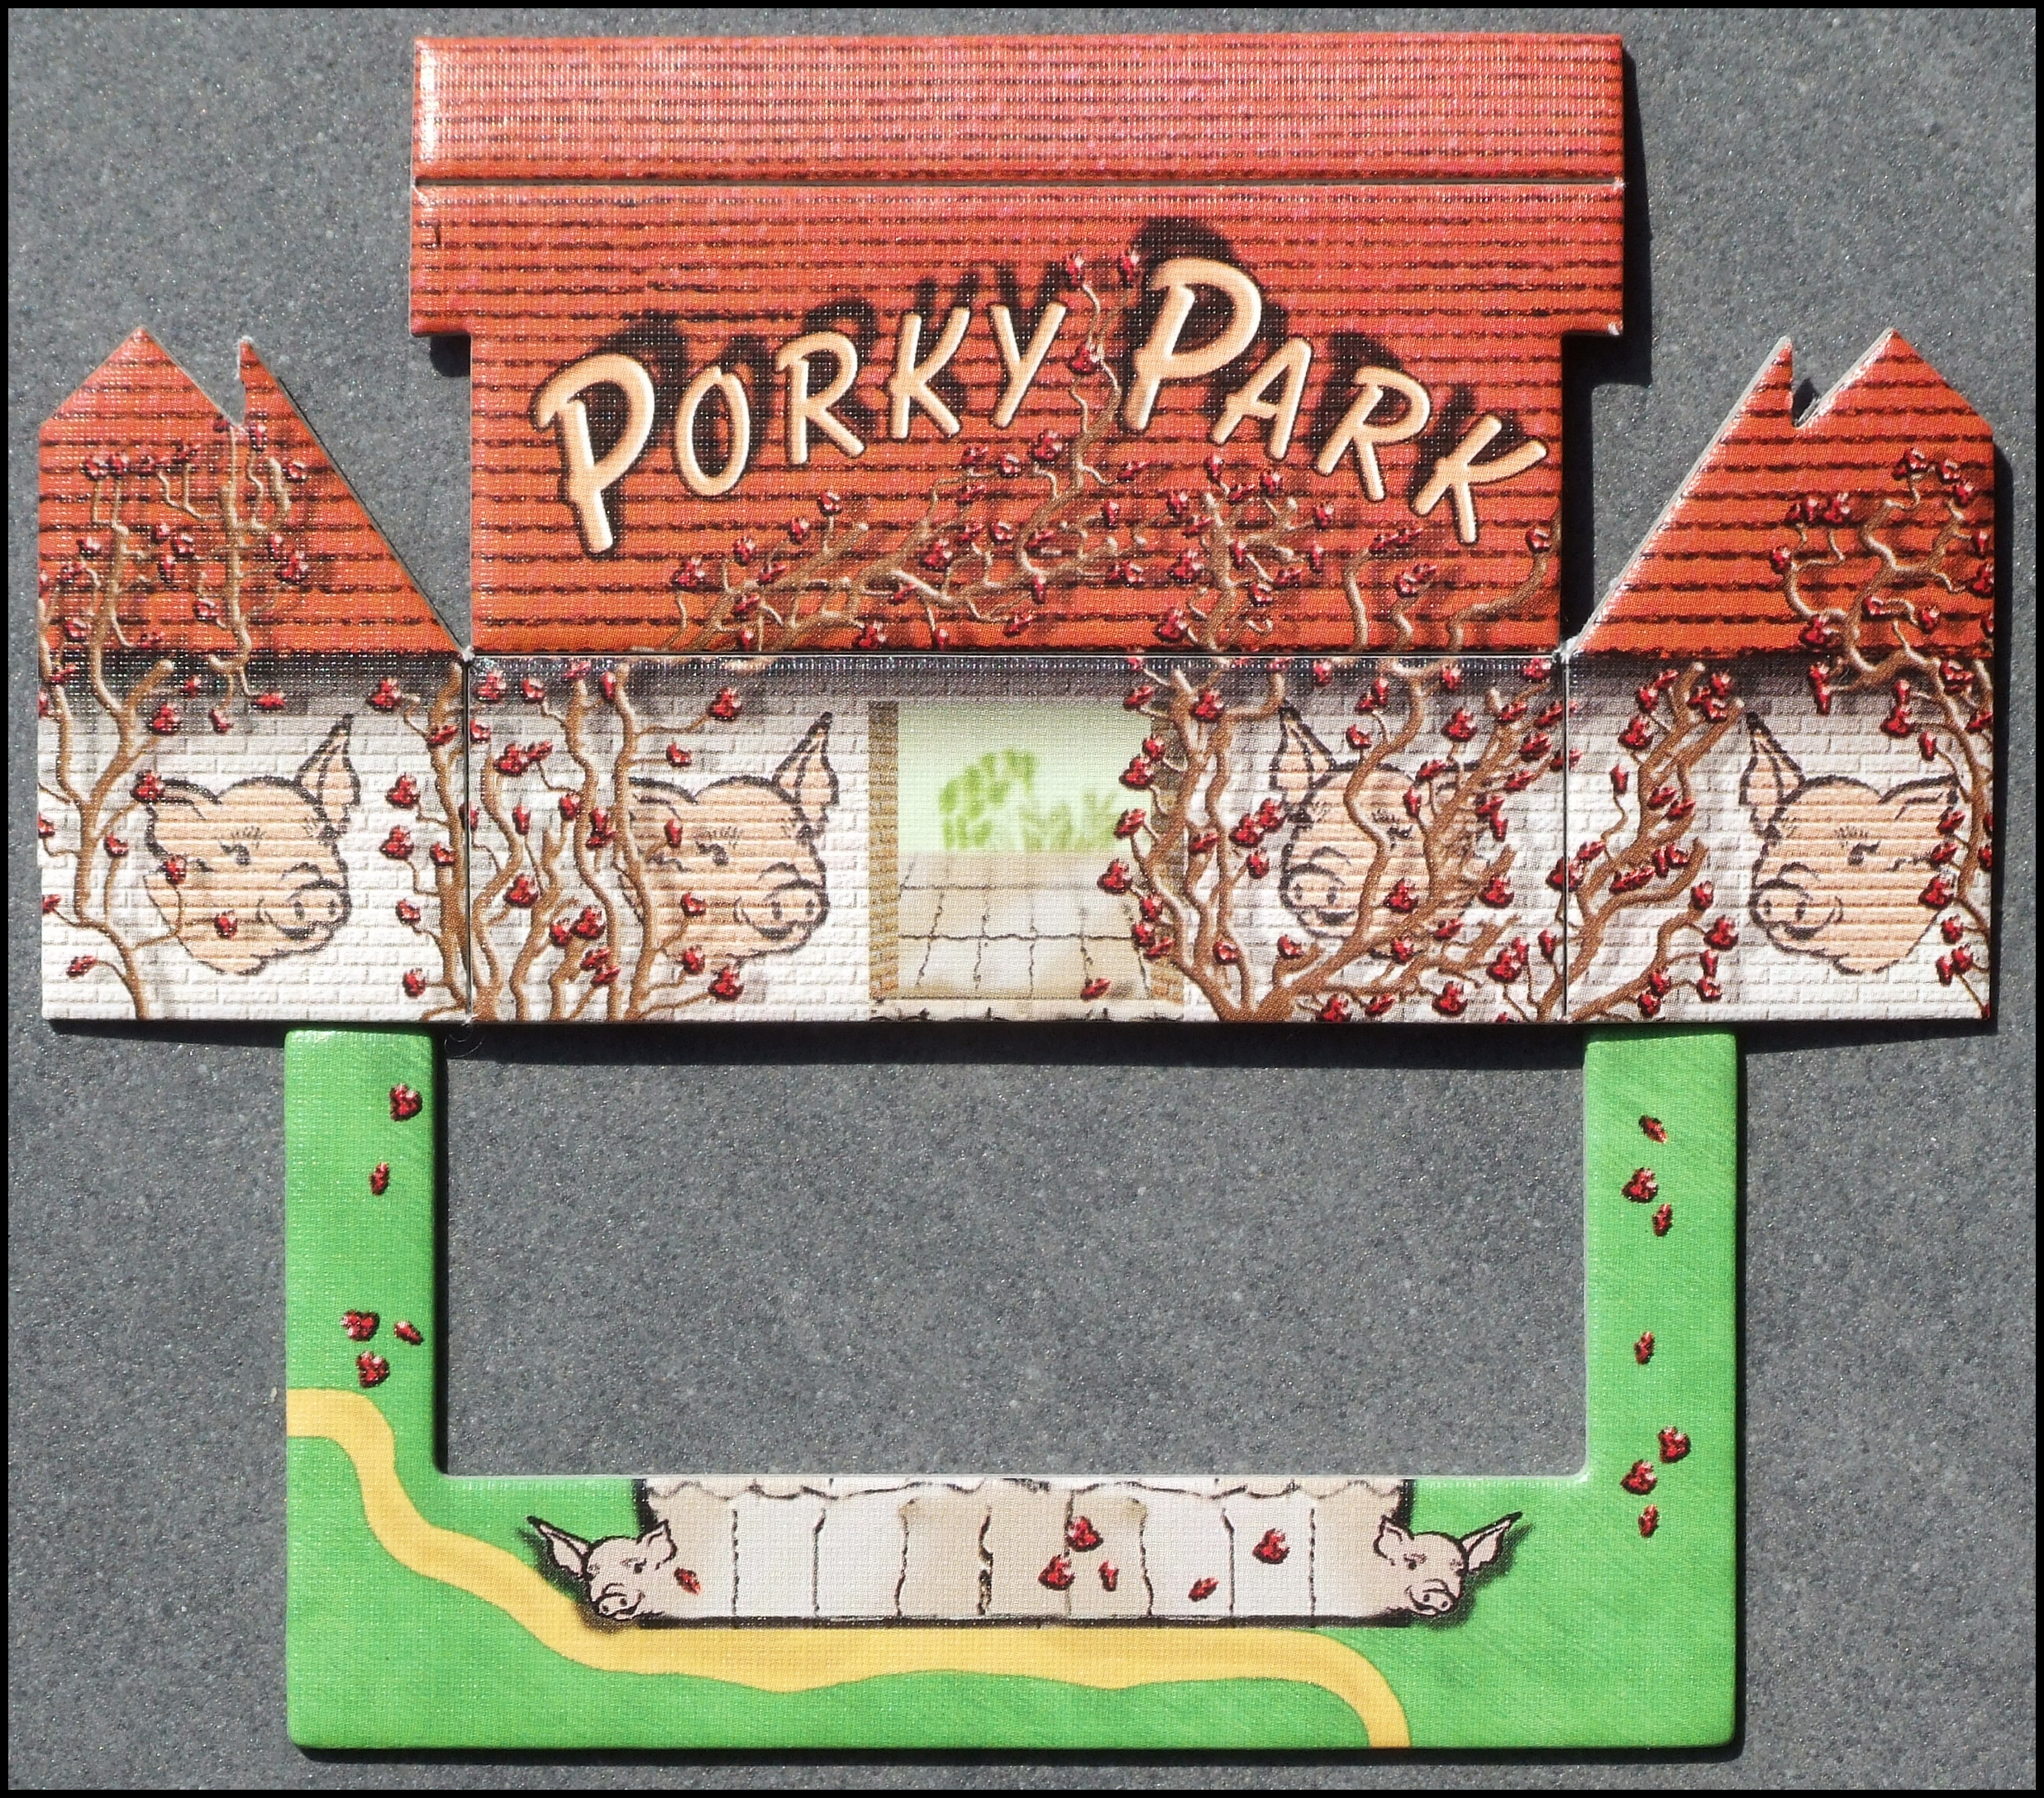 O Zoo Le Mio - Porky Park, Front